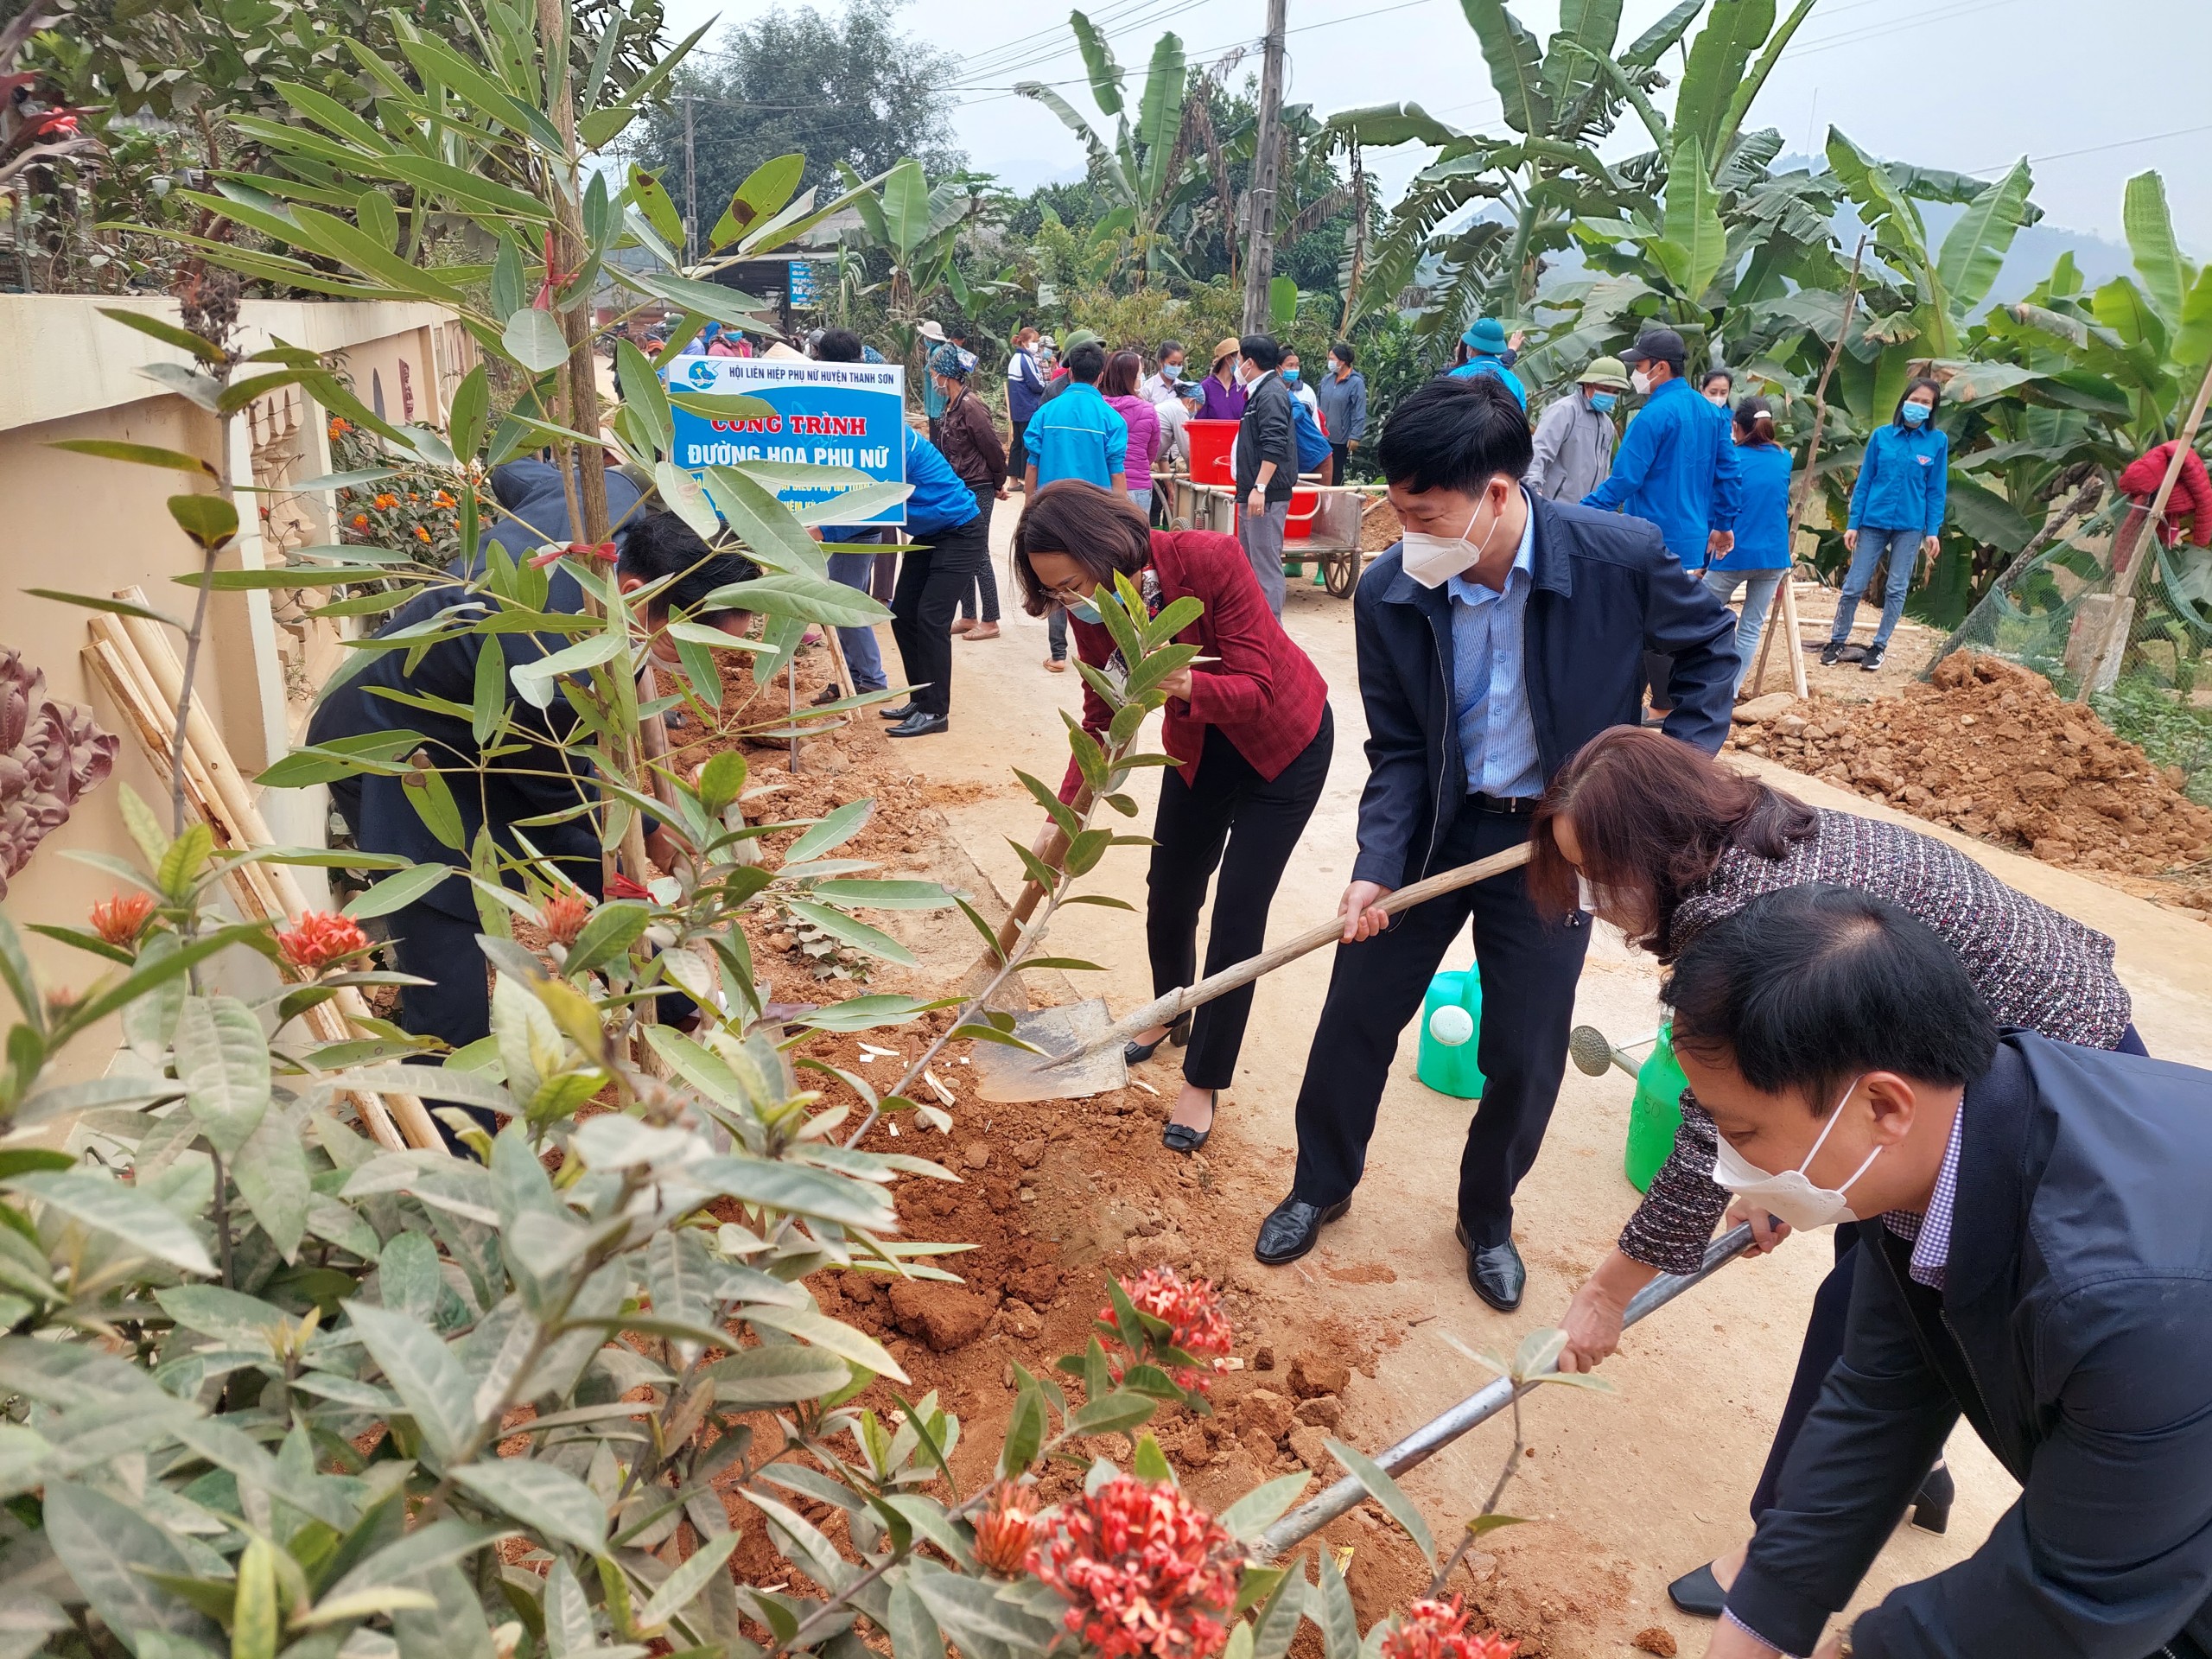 Hội LHPN huyện Thanh Sơn ra quân trồng “Đường hoa phụ nữ” tại xã Khả Cửu